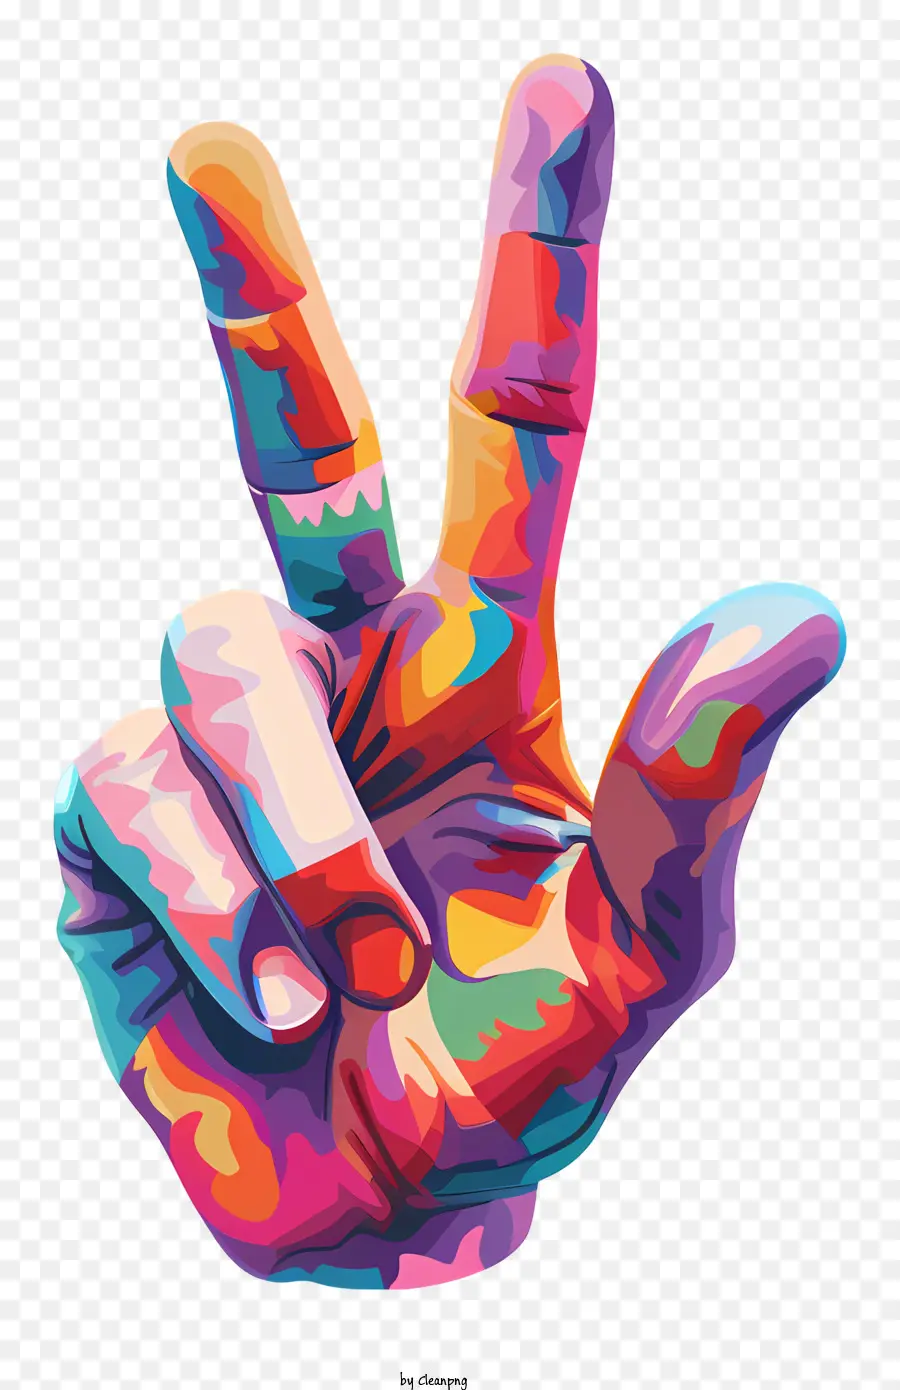 Handfriedenszeichen Regenbogenfarben Handgeste Symbol Symbol - Handschaffende Friedenszeichen in Regenbogenfarben